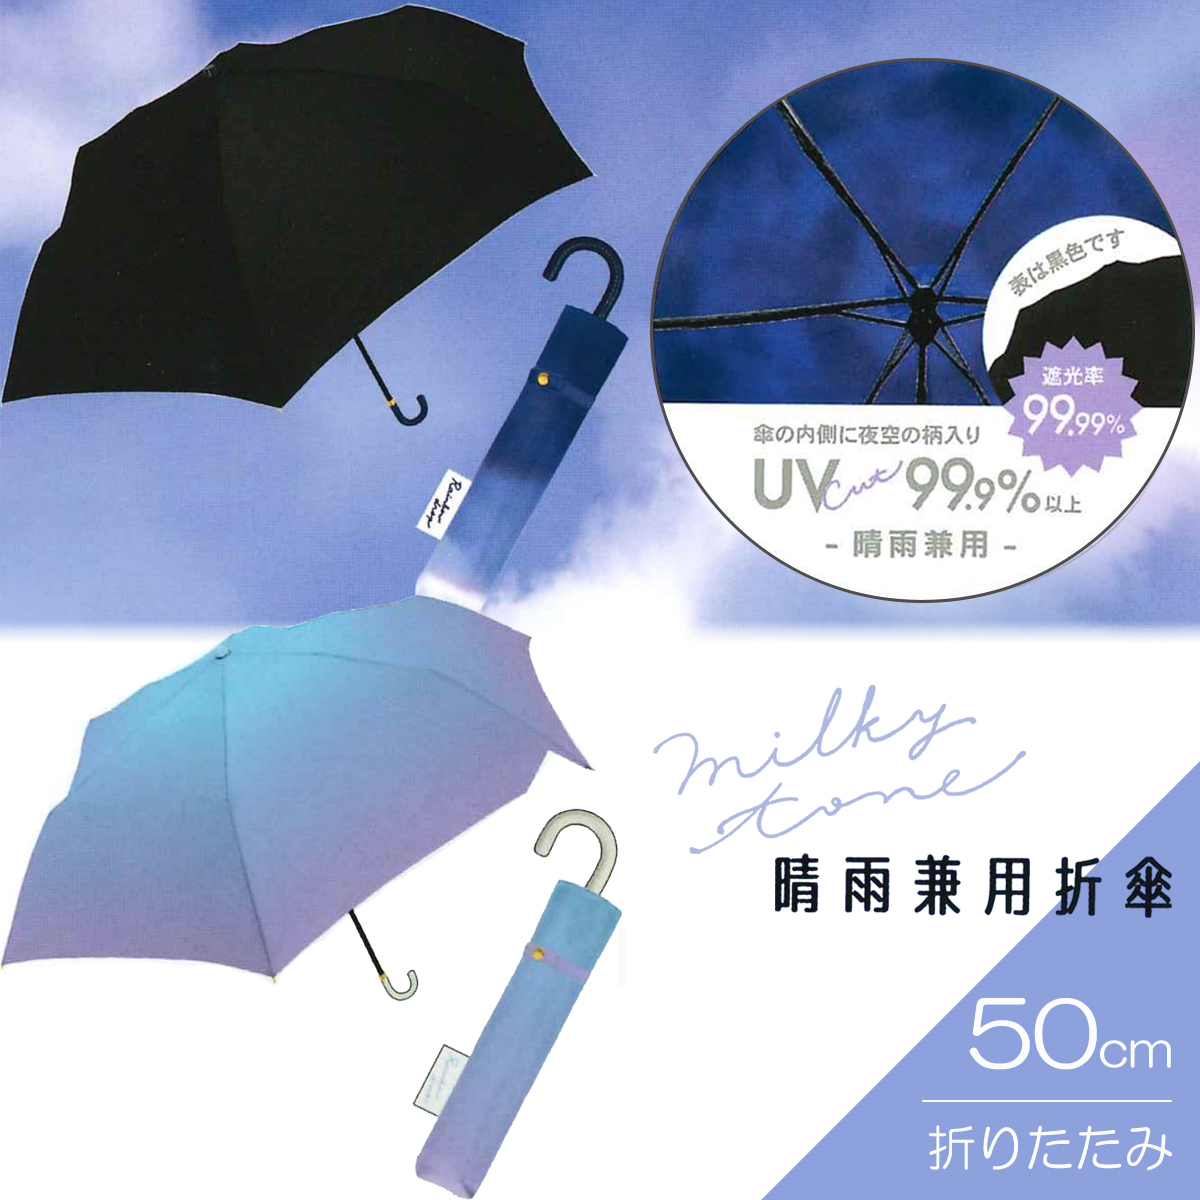 【CRUX】クラックス ミルキートーン 晴雨兼用折傘 50cm 婦人傘